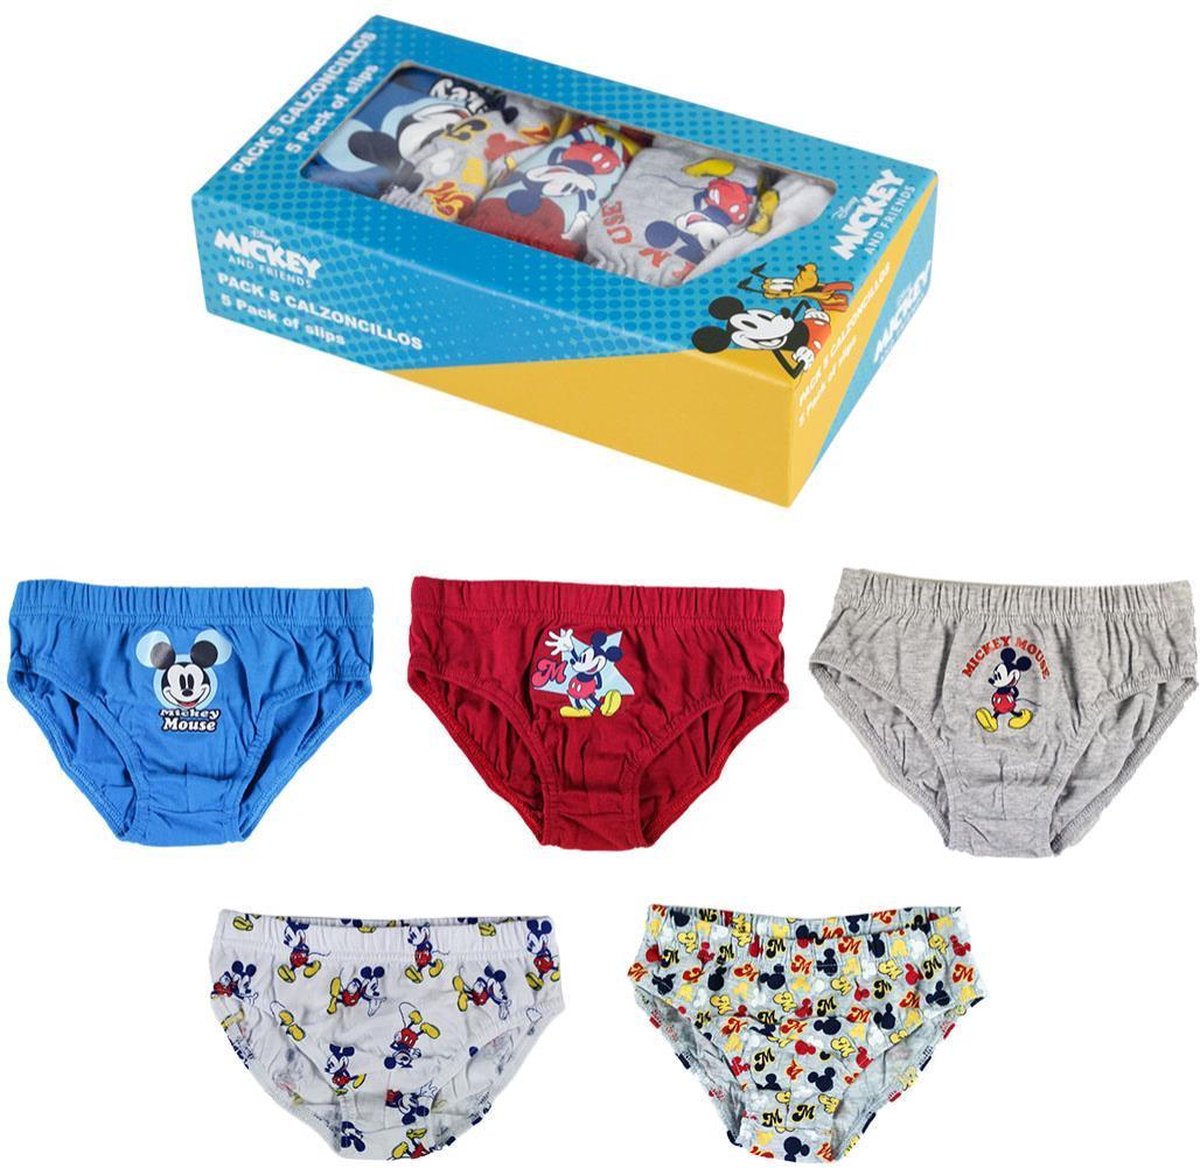 Incubus boeket consumptie Disney - Mickey Mouse - jongens - peuter/kinder - ondergoed (5 slips) in  cadeaudoos -... | bol.com